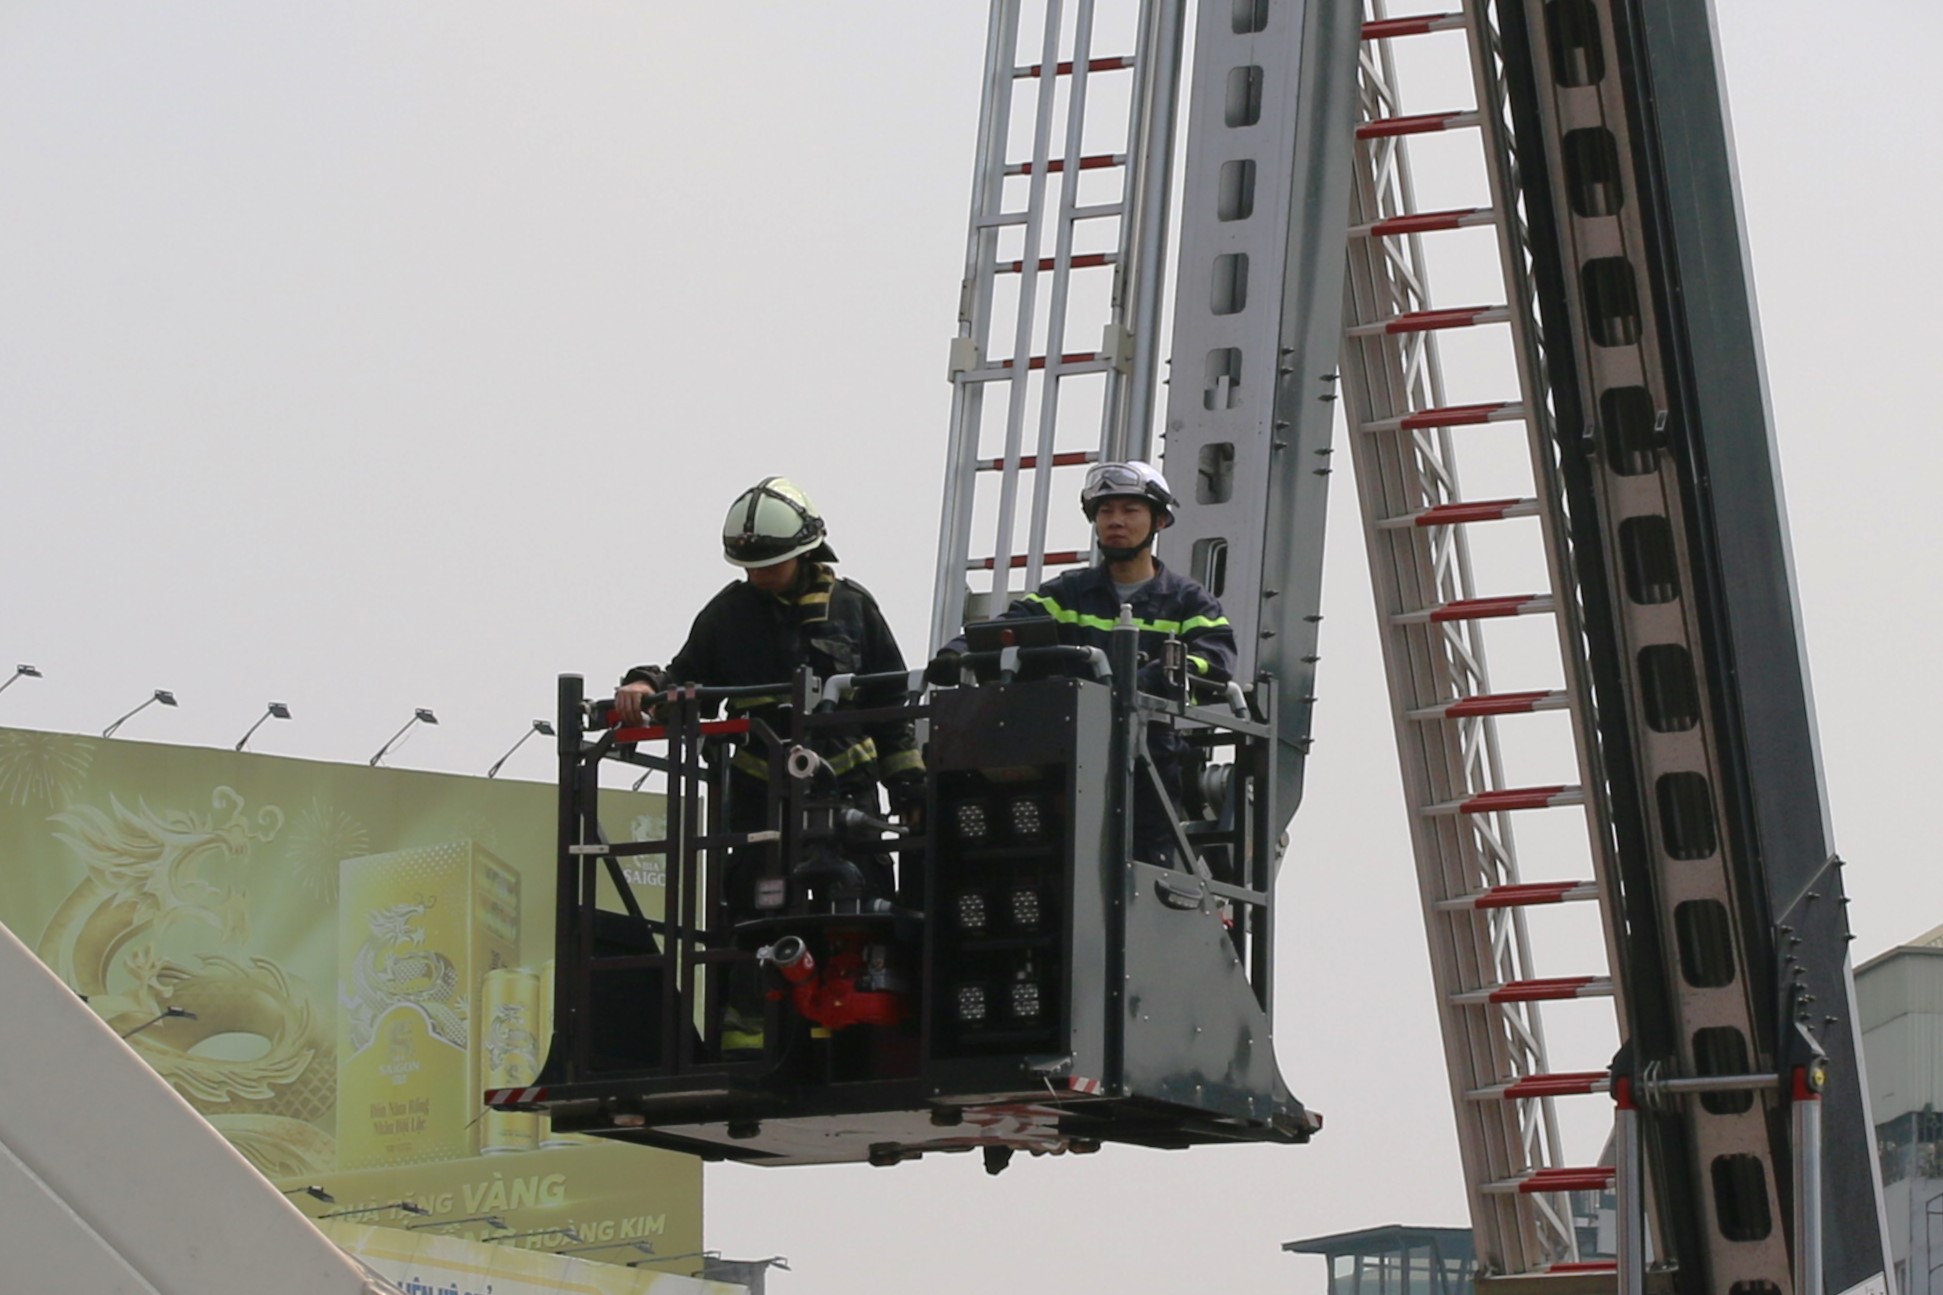 Hé lộ nguyên nhân cháy lớn tại tòa nhà 9 tầng tại ngã 5 nổi tiếng Hà Nội- Ảnh 3.